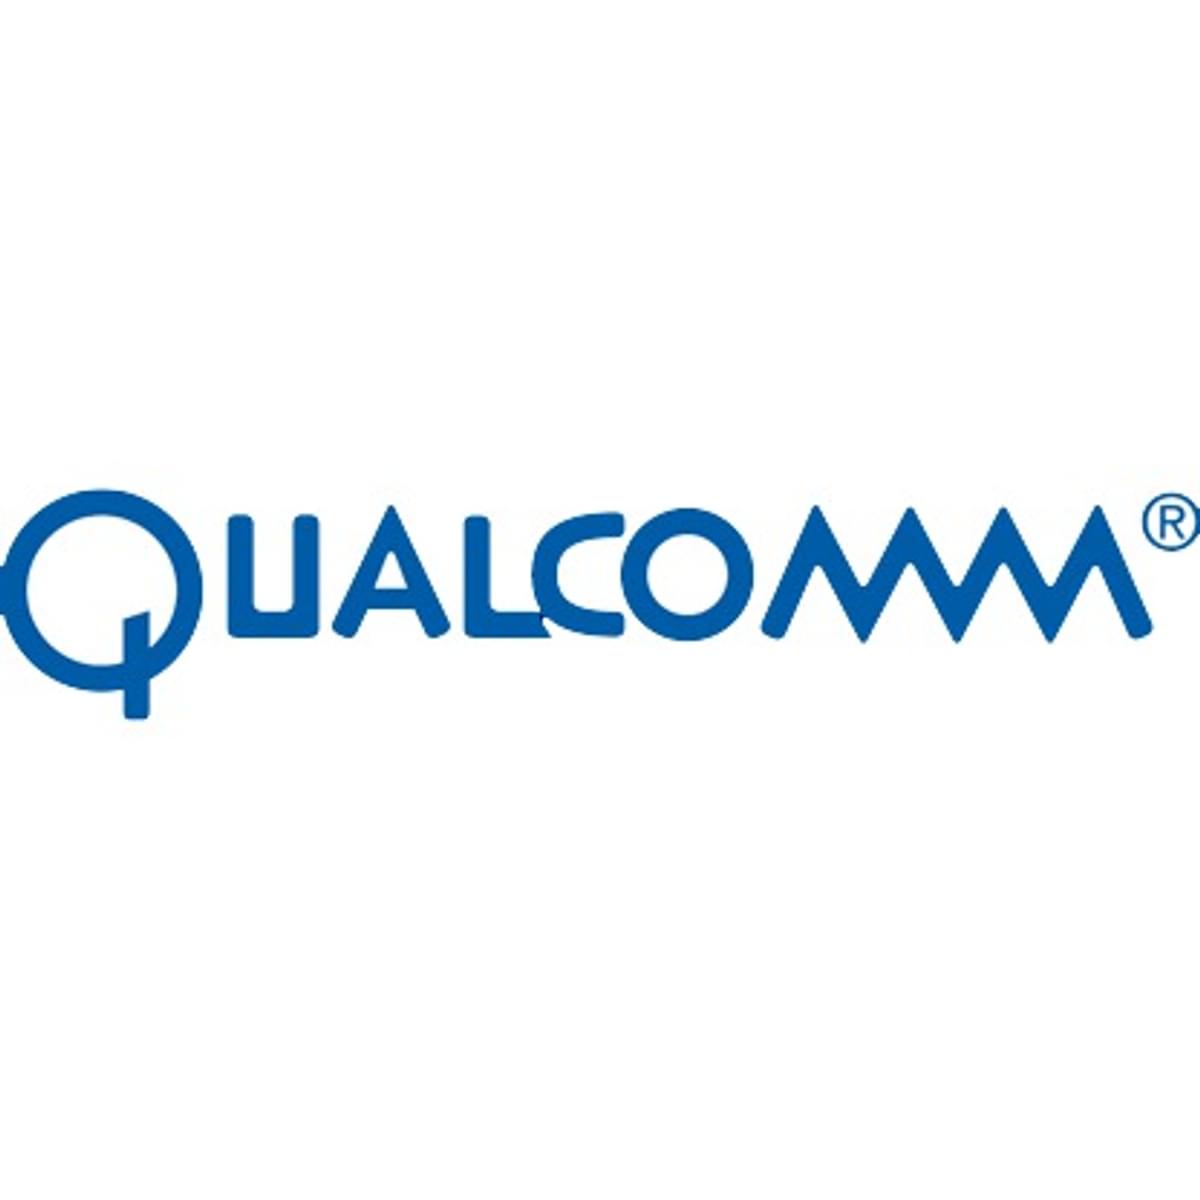 Qualcomm wil uitbreiden in rijhulpsystemen met overnamebod Veoneer image